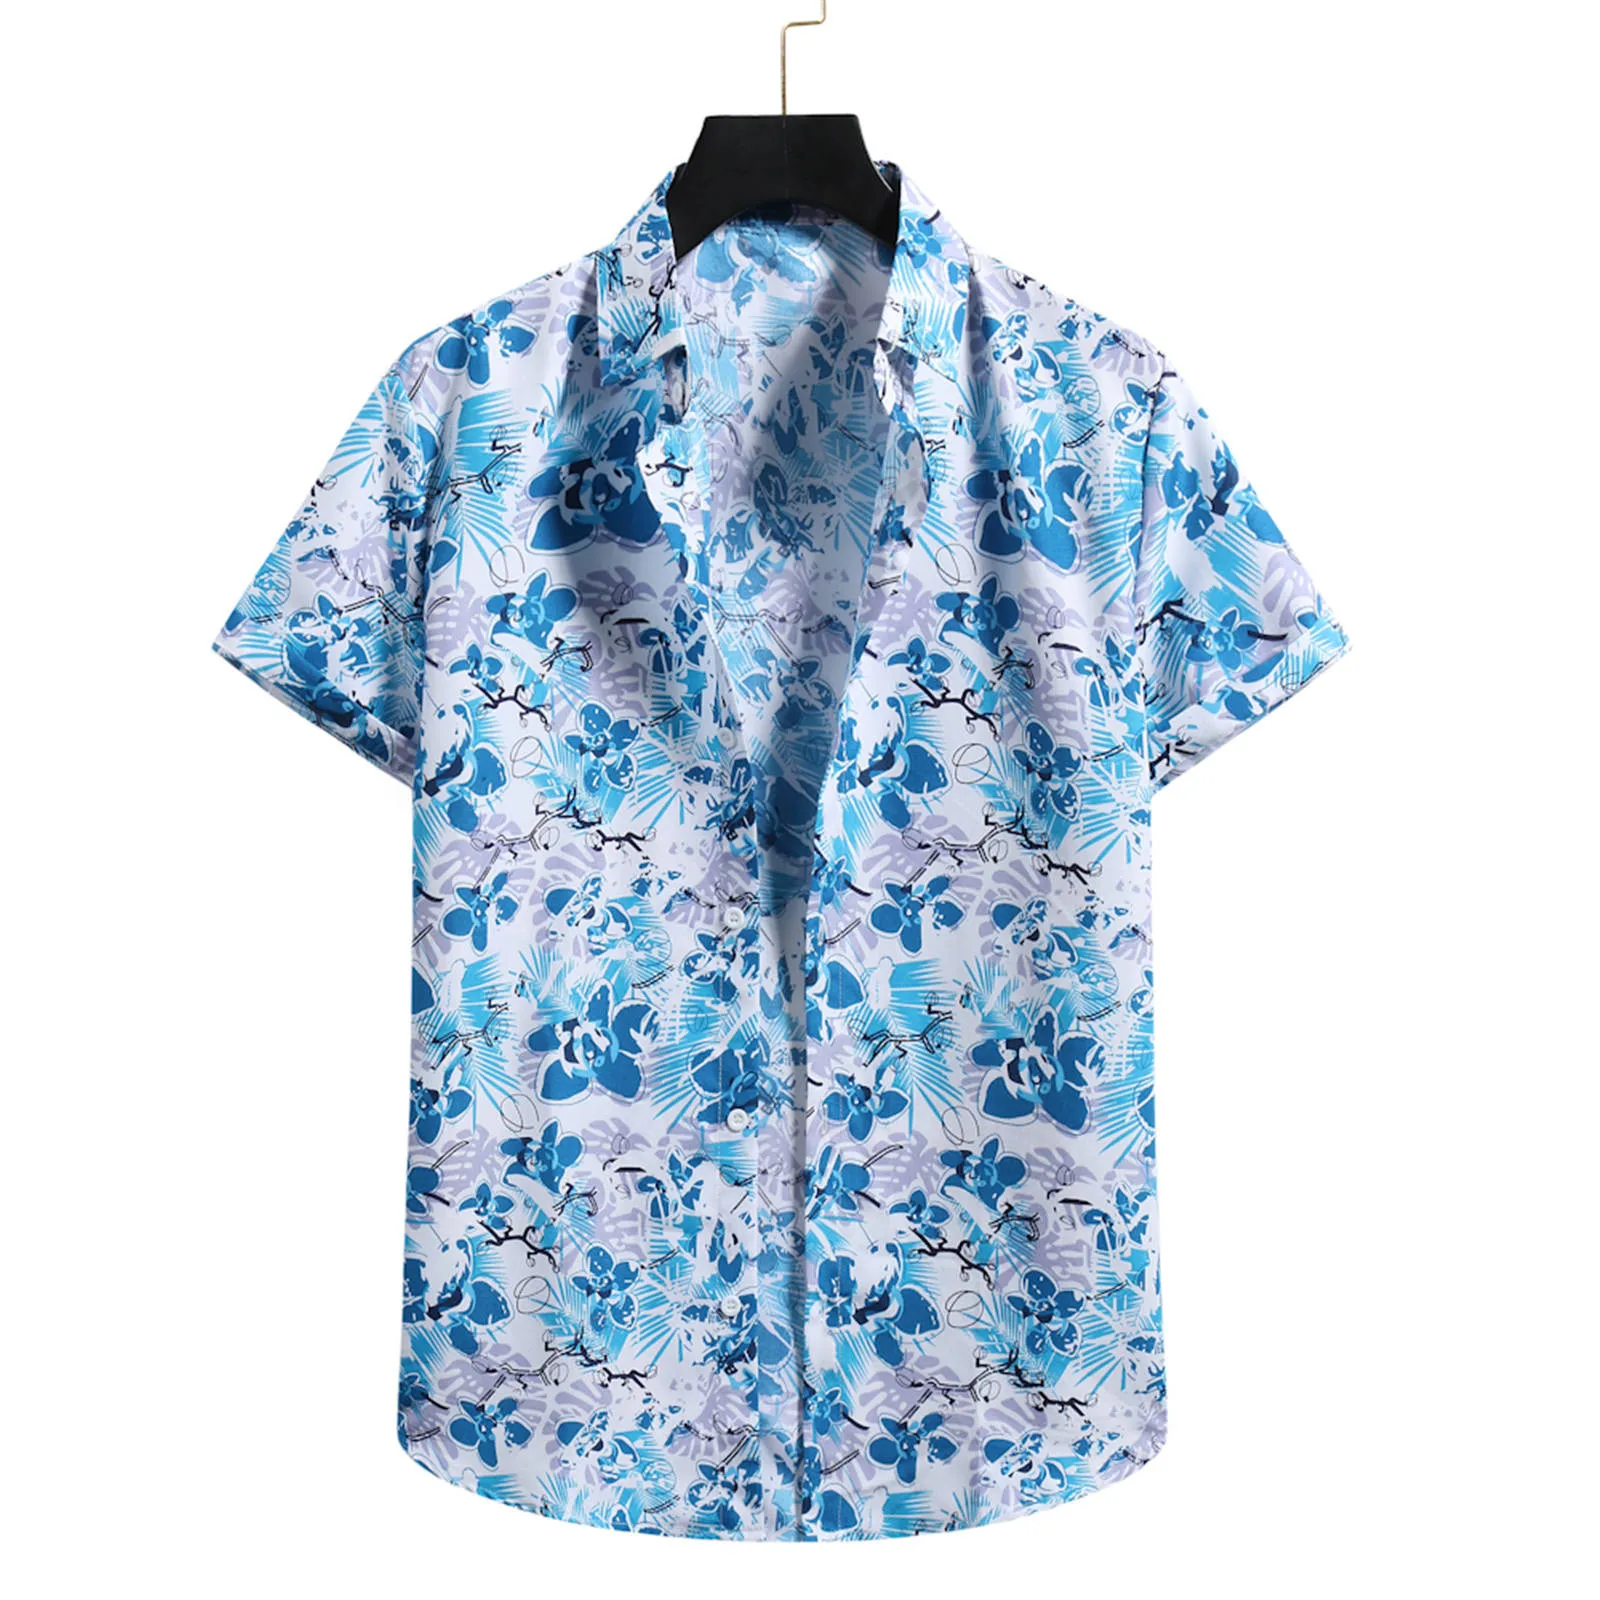 

Пляжный кардиган, короткая мужская рубашка с цветами, водолазка, рубашка, мужские Гавайские рубашки с рукавами, тяжелые хлопковые футболки ...